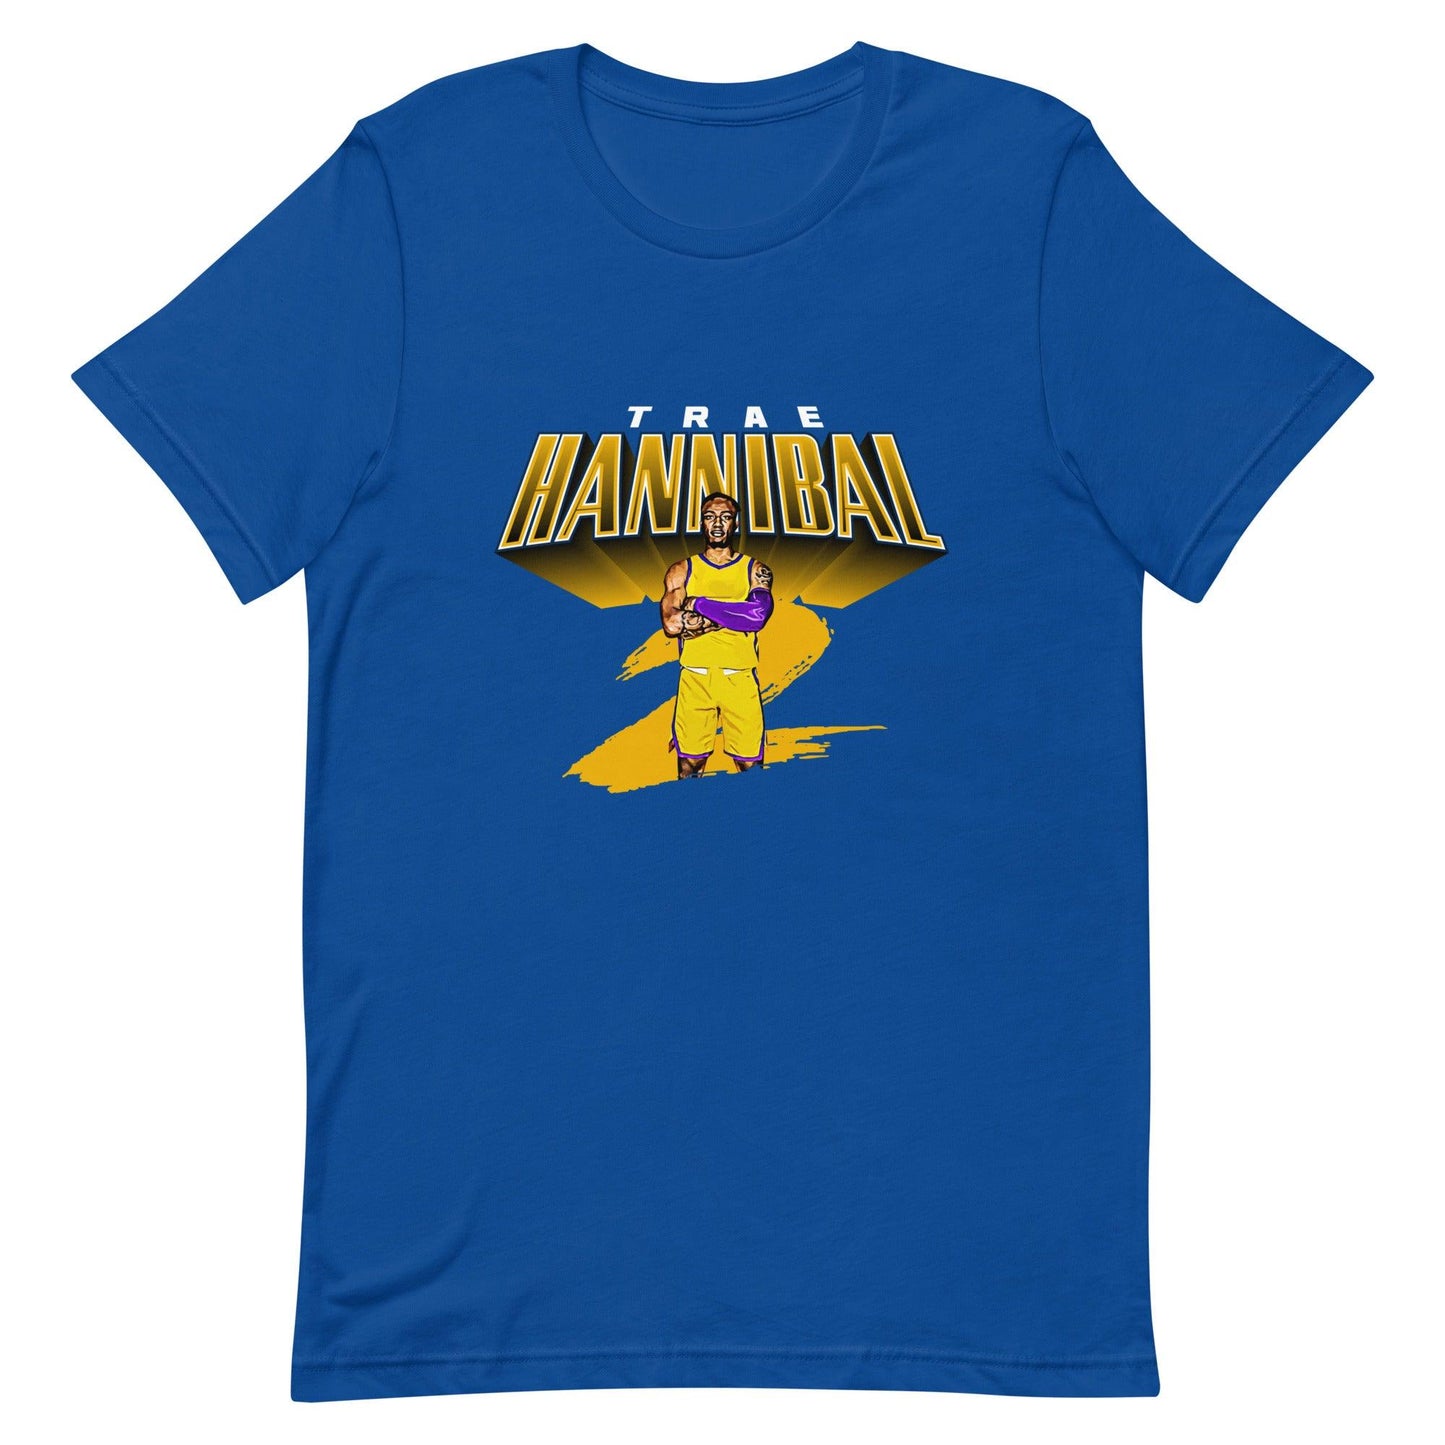 Trae Hannibal "Gameday" t-shirt - Fan Arch